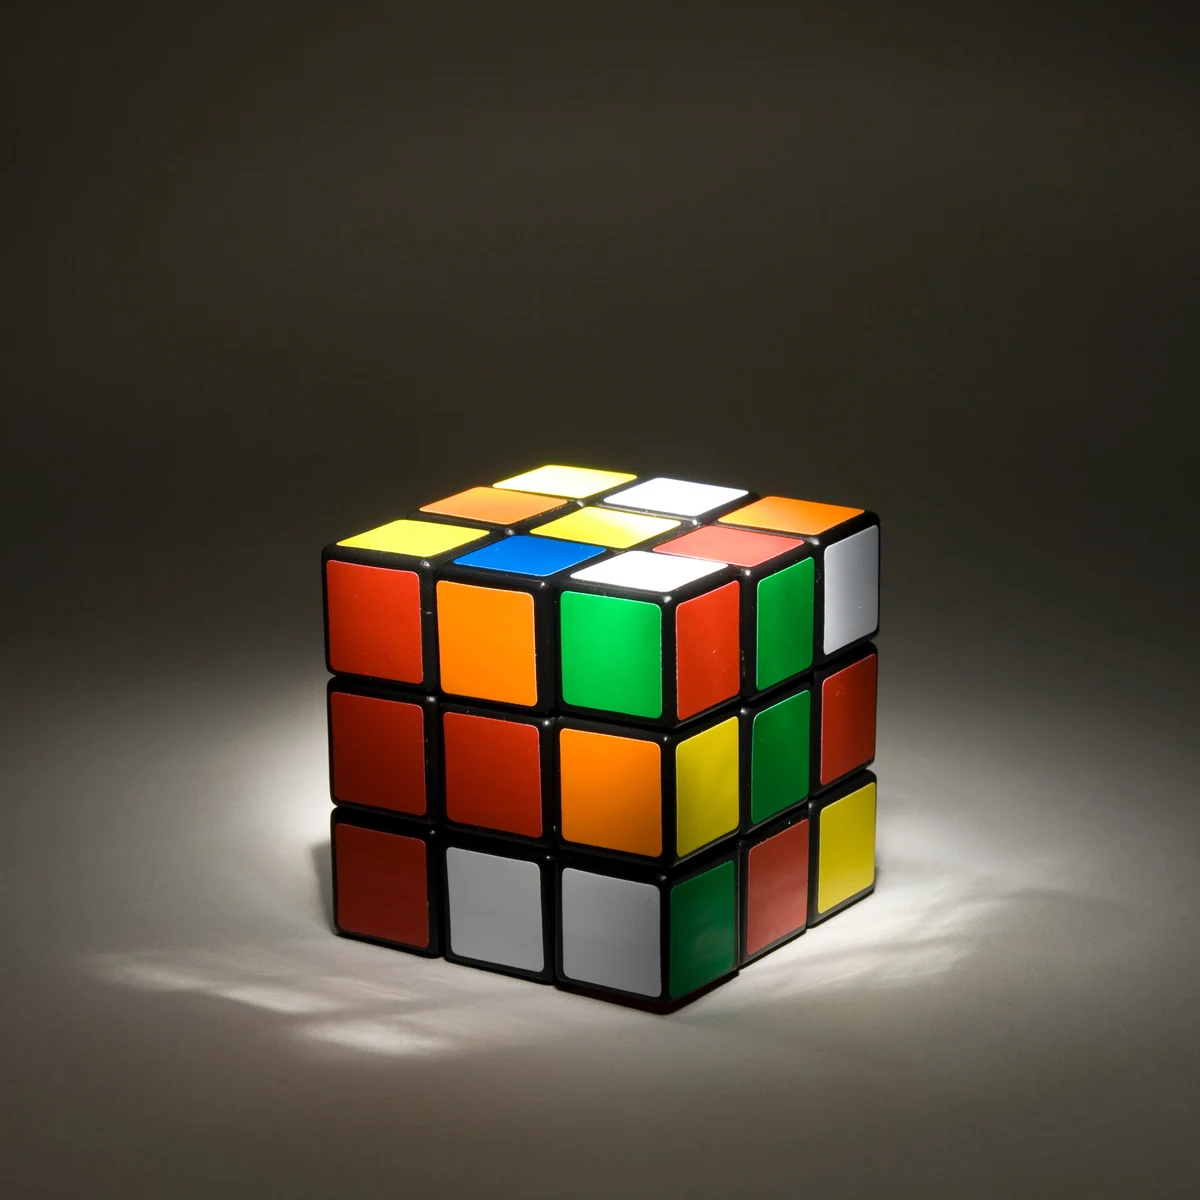 El cubo rubik vuelve a estar de moda: así se resuelve uno de los juegos más famosos mundo